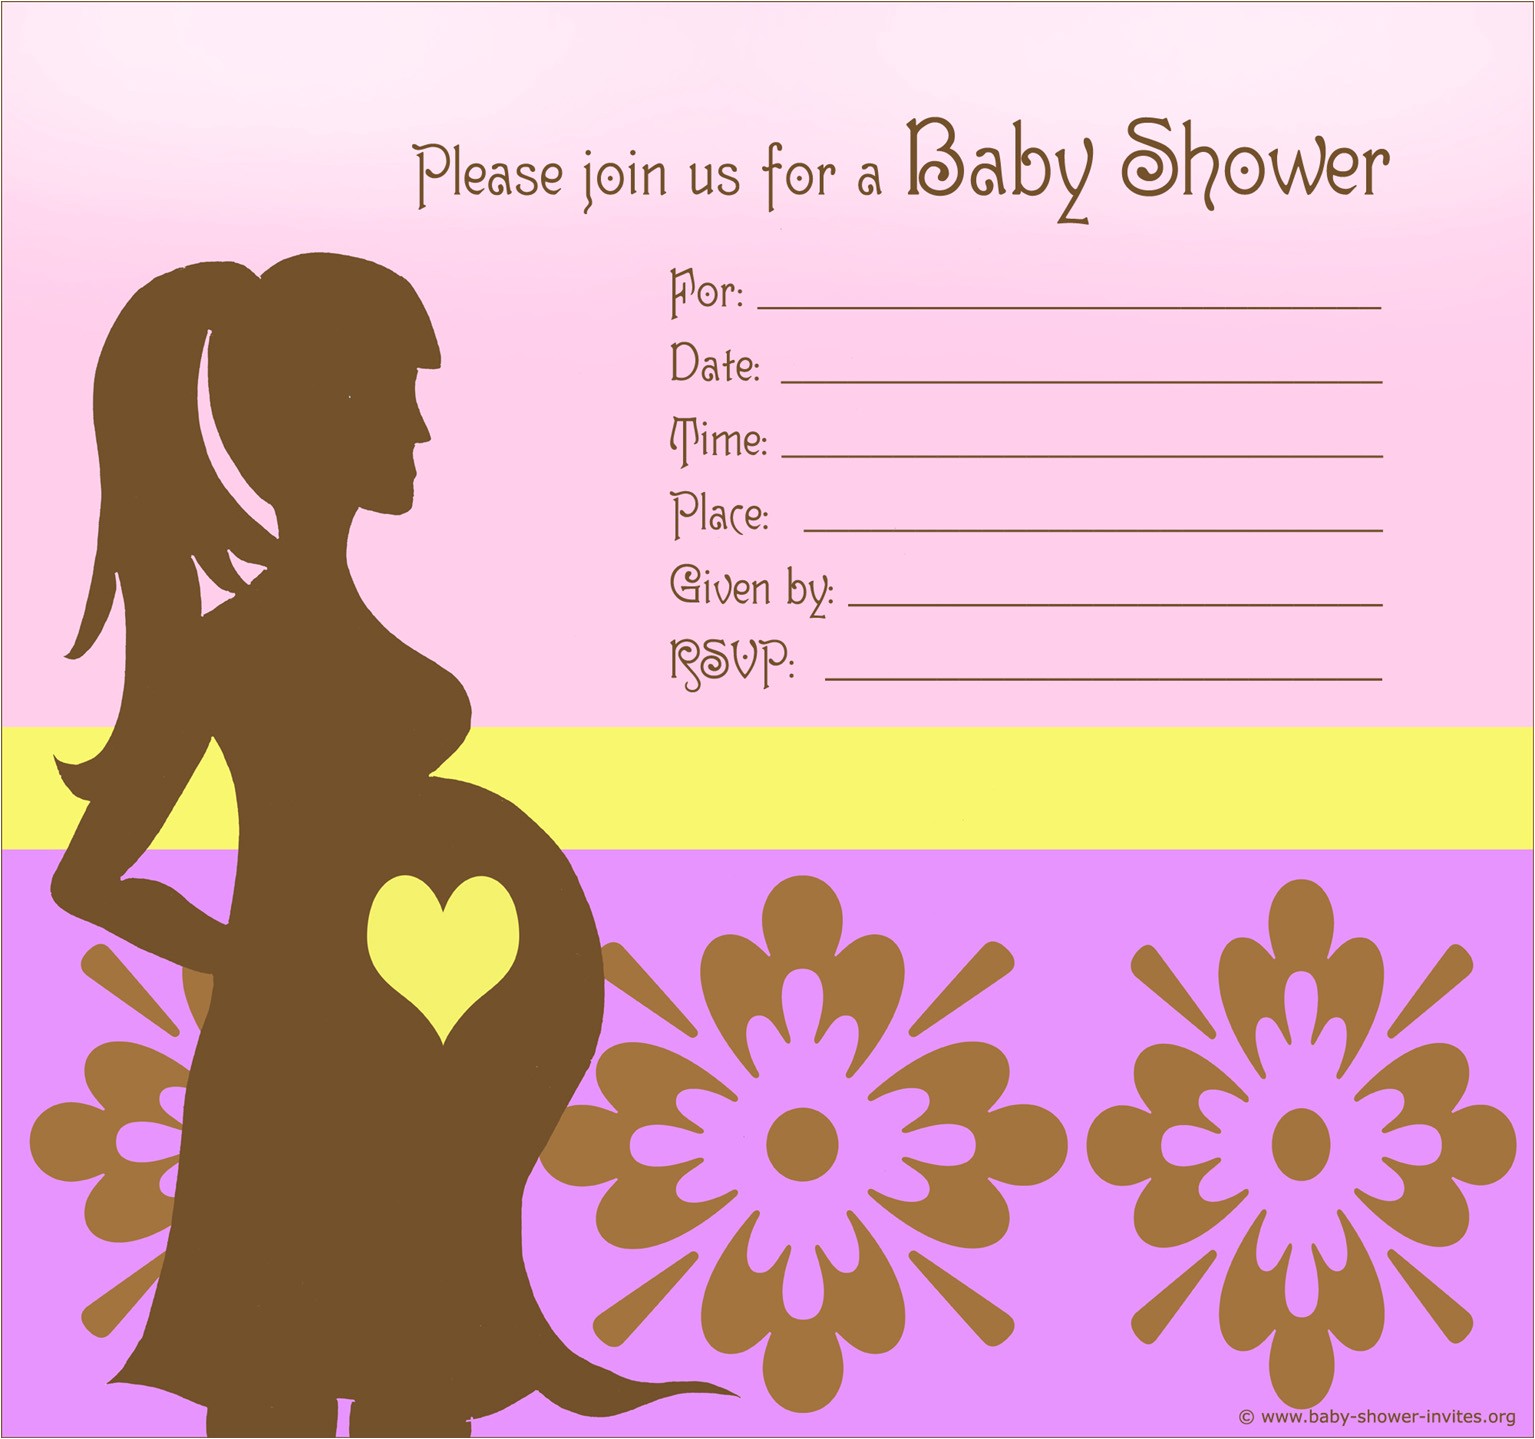 Custom Baby Shower Invitations for Girl Custom Baby Shower Invitations for Girl